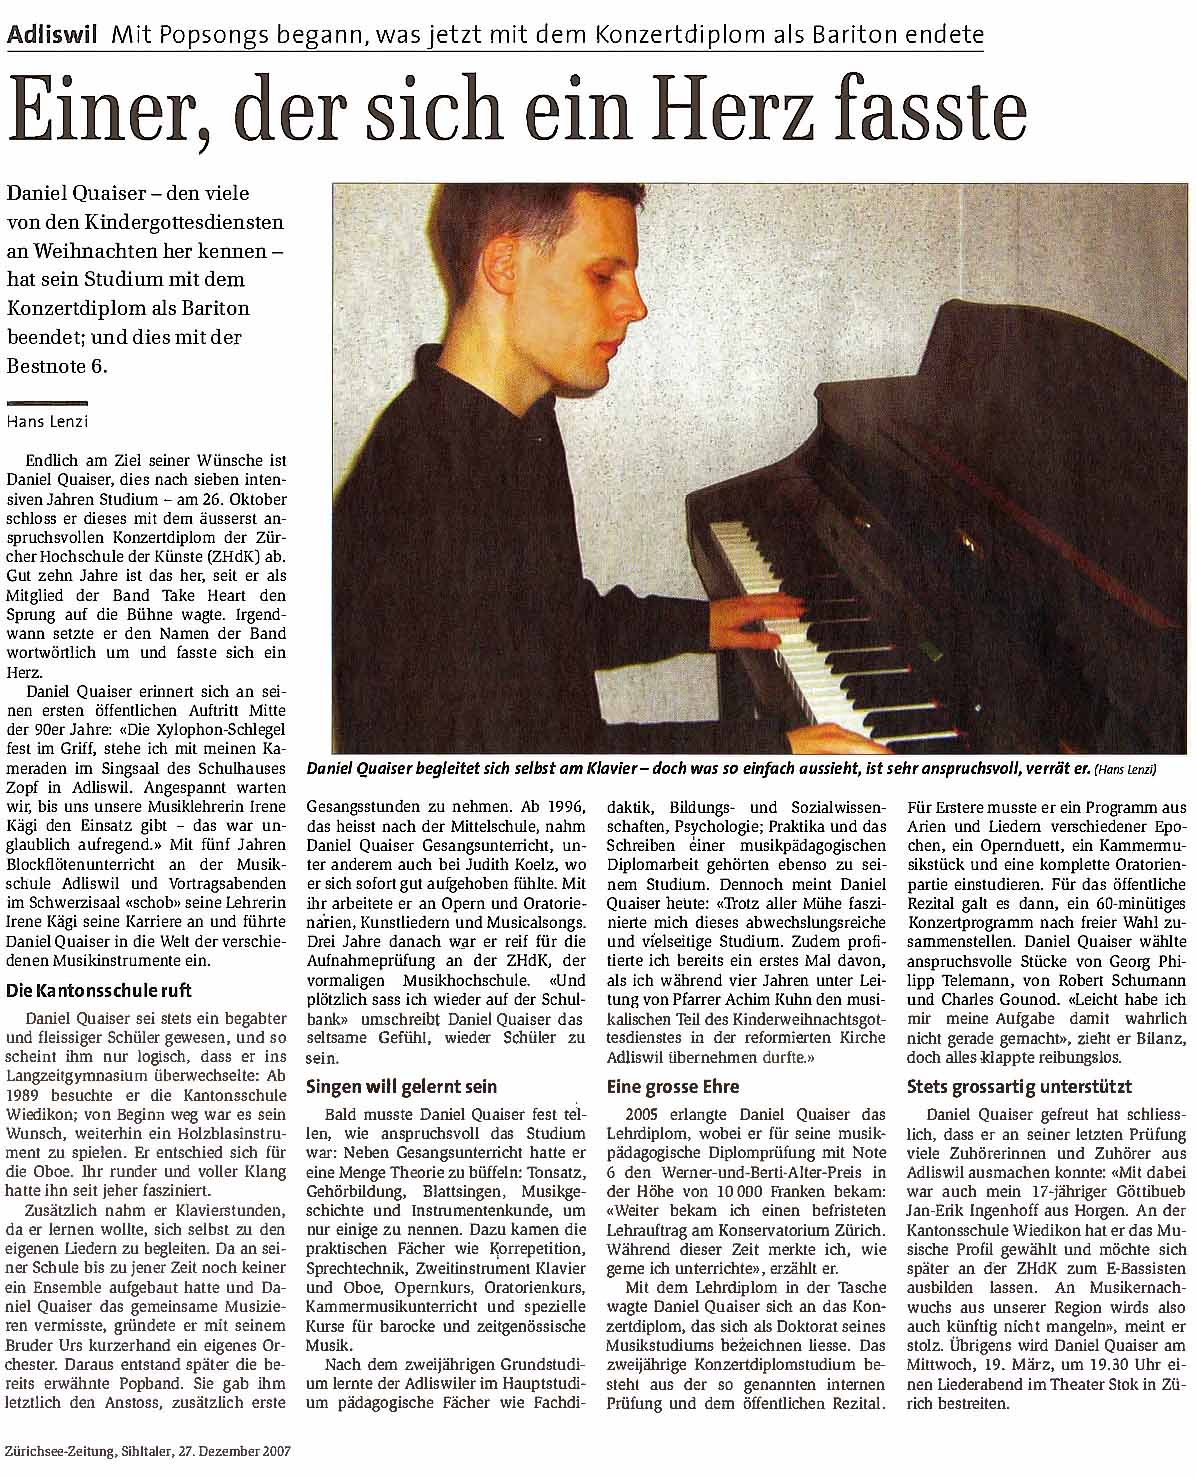 Daniel Quaiser Zürichsee-Zeitung Sihltaler Hans Lenzi Einer der sich ein Herz fasste 27.12.2007